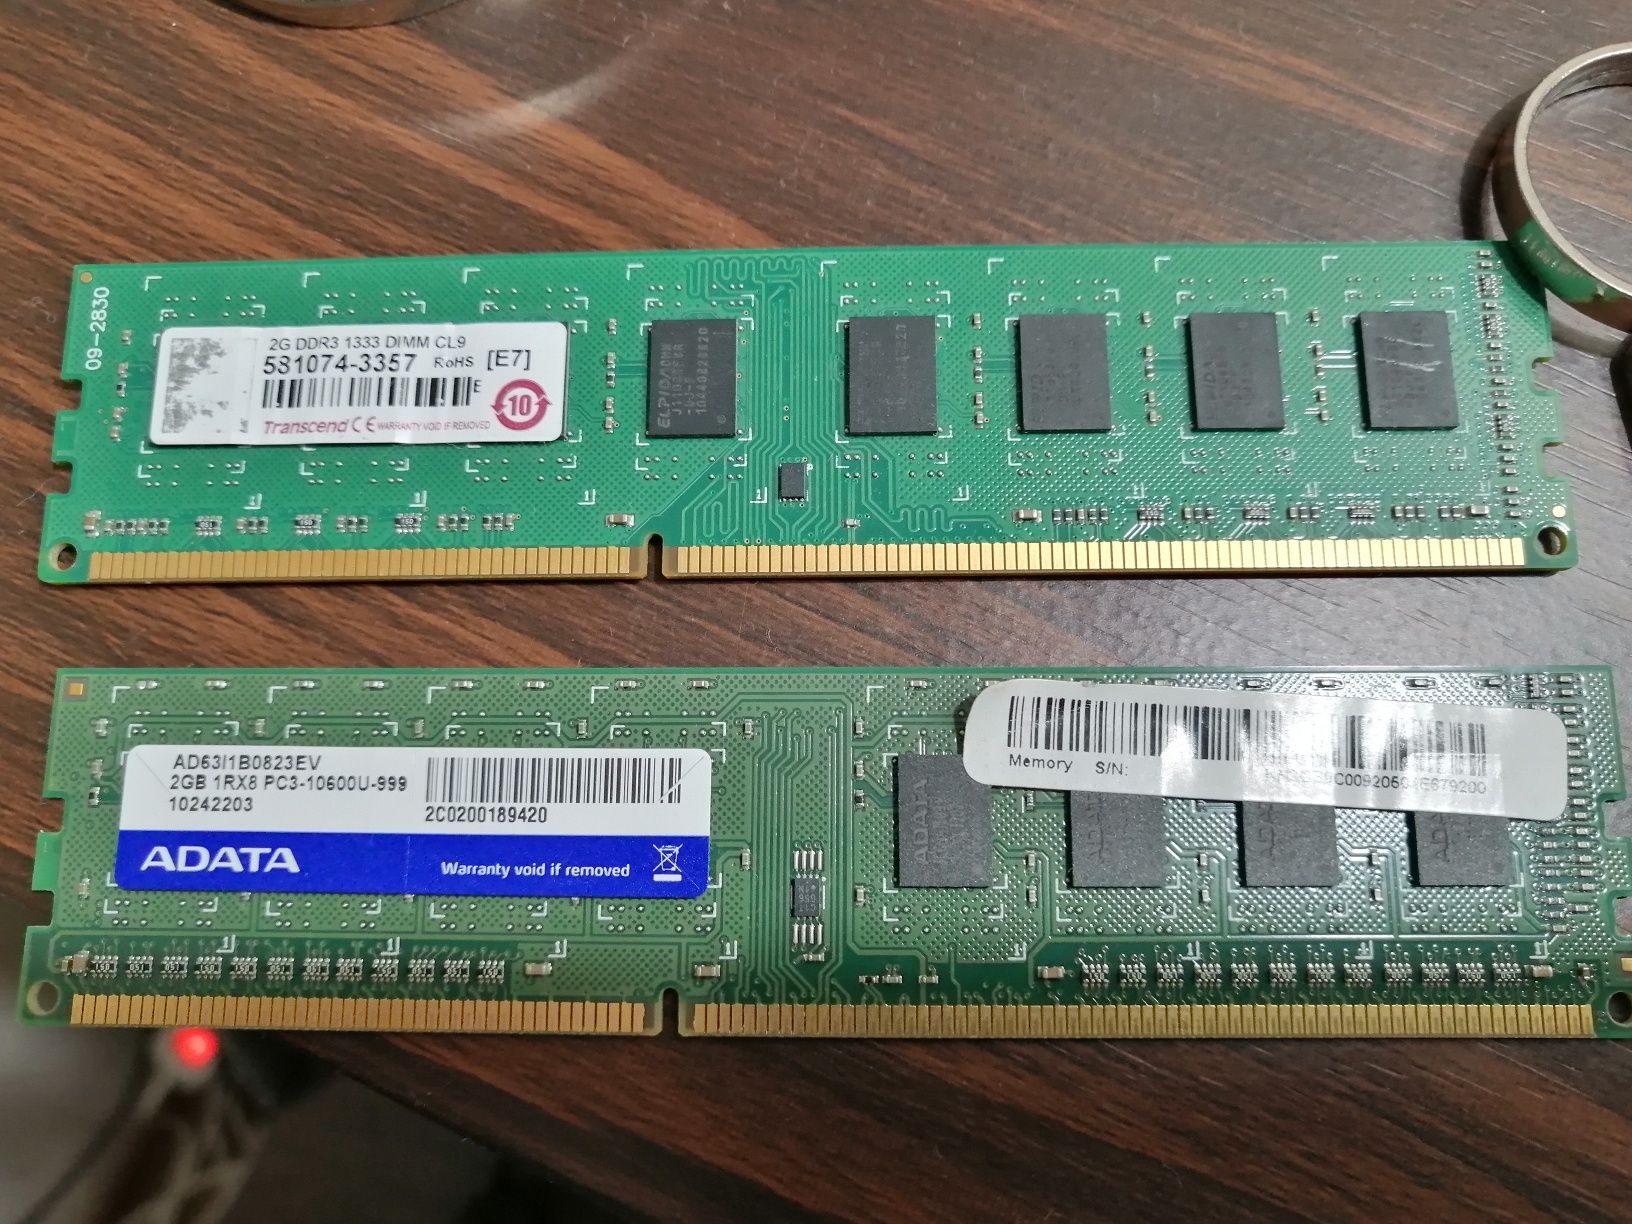 Оперативная память по 2гб. DDR3